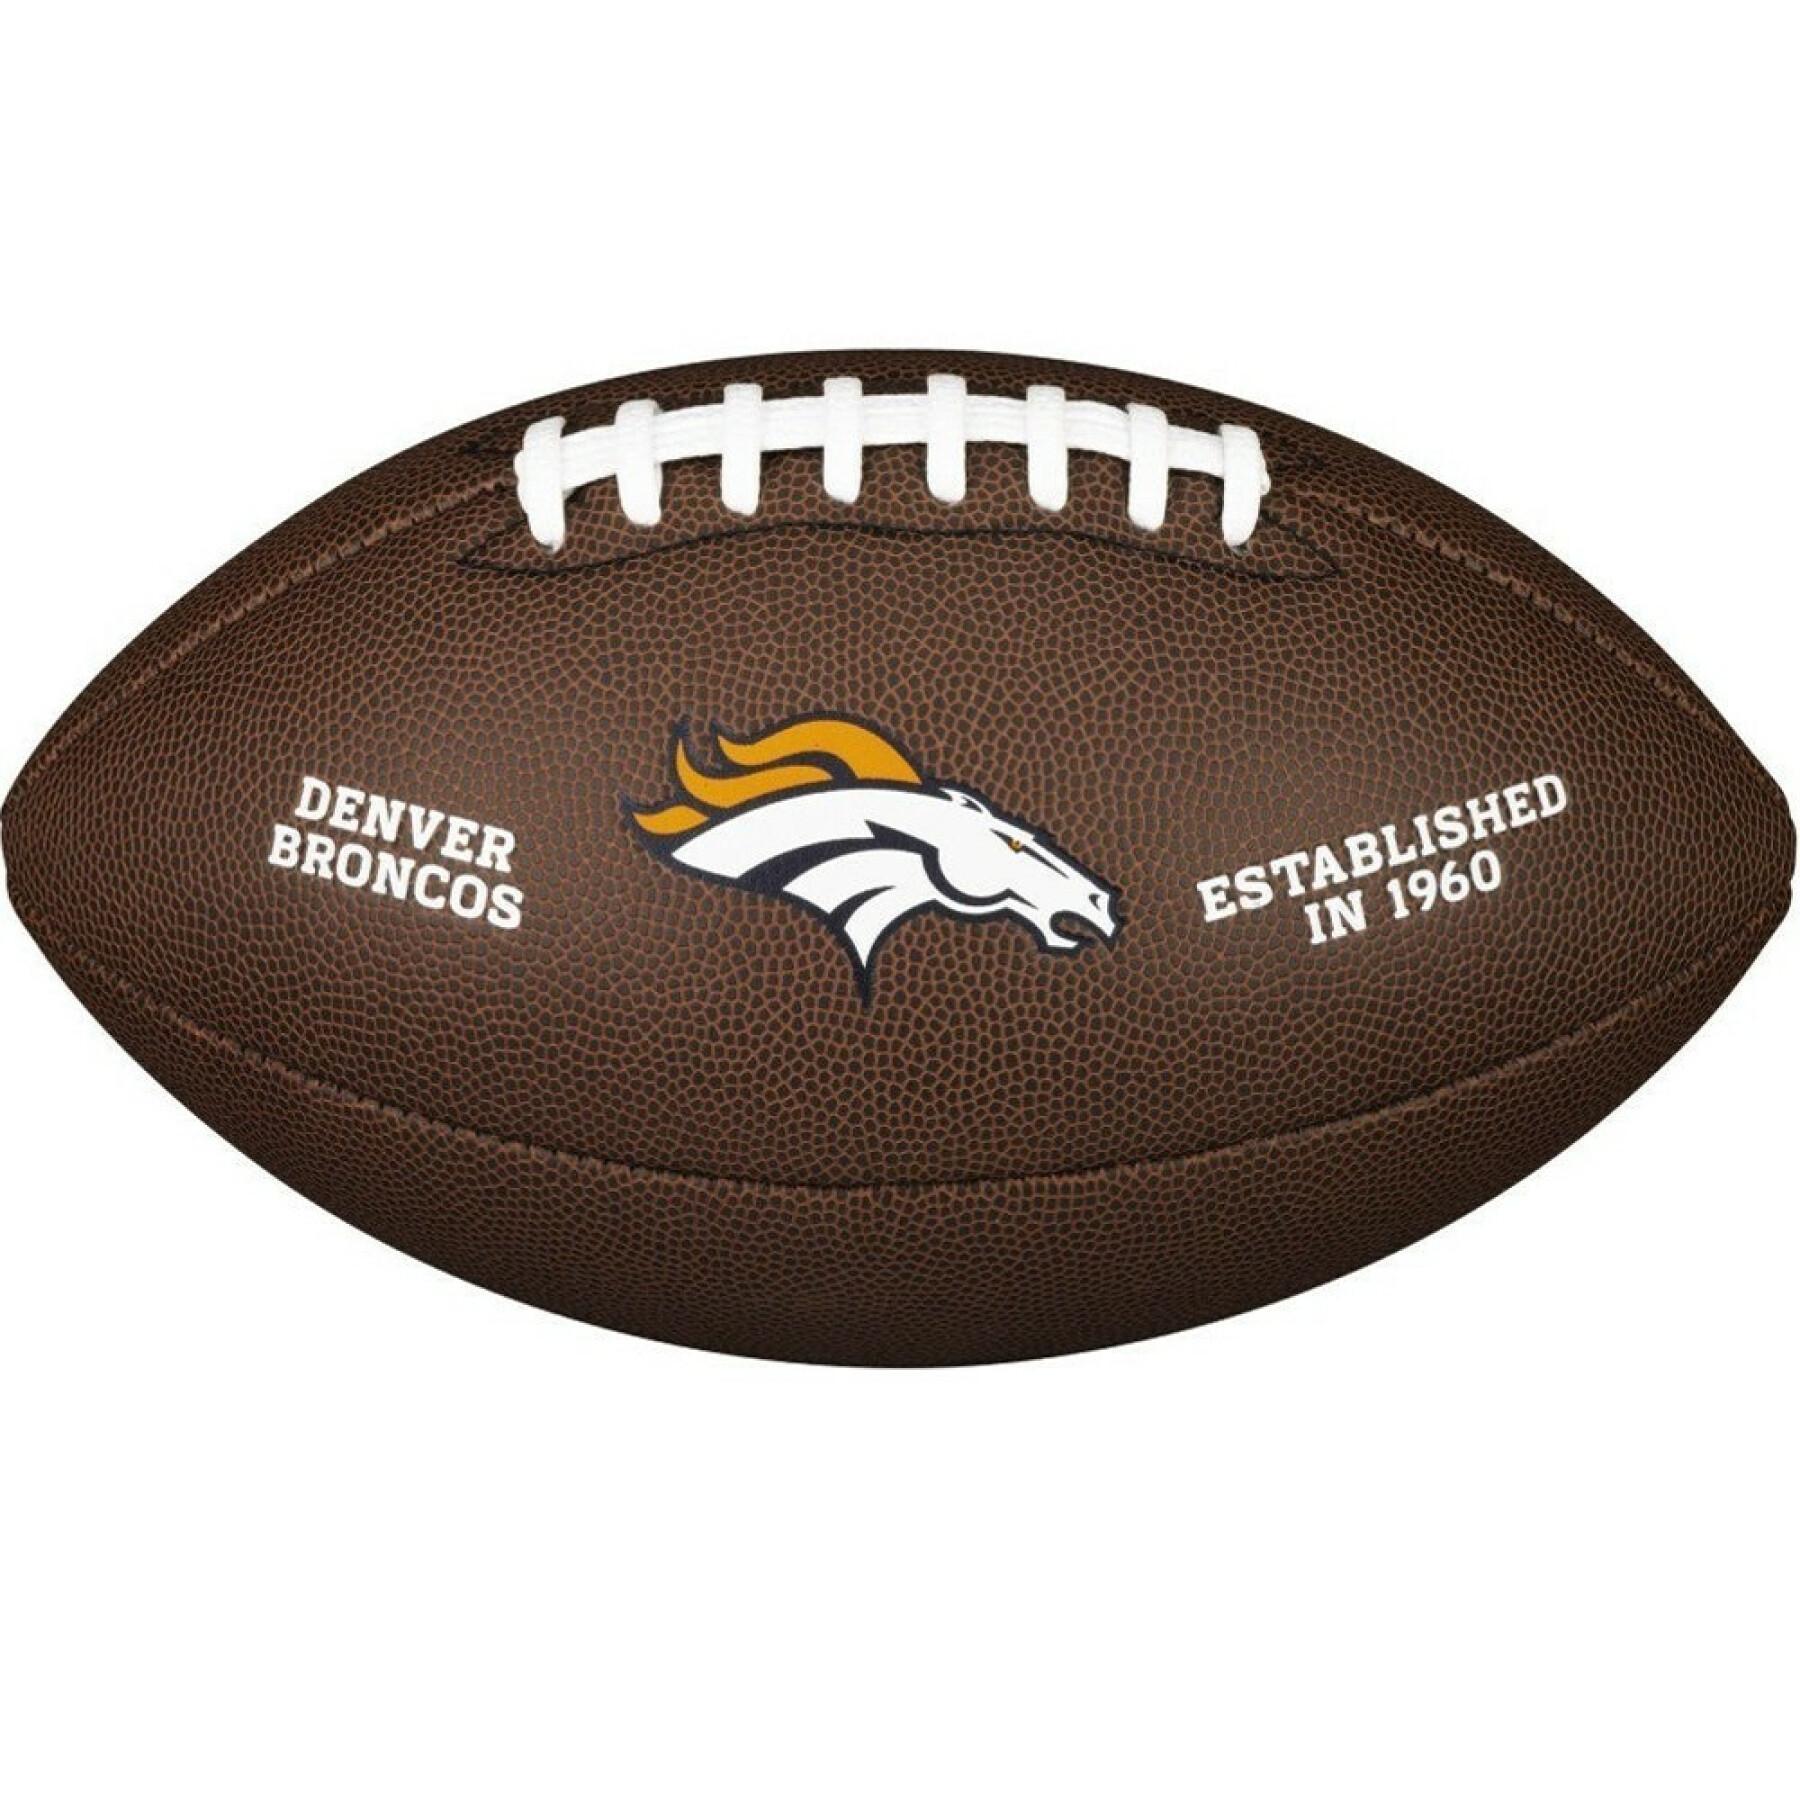 Ballon Wilson Broncos NFL Licensed